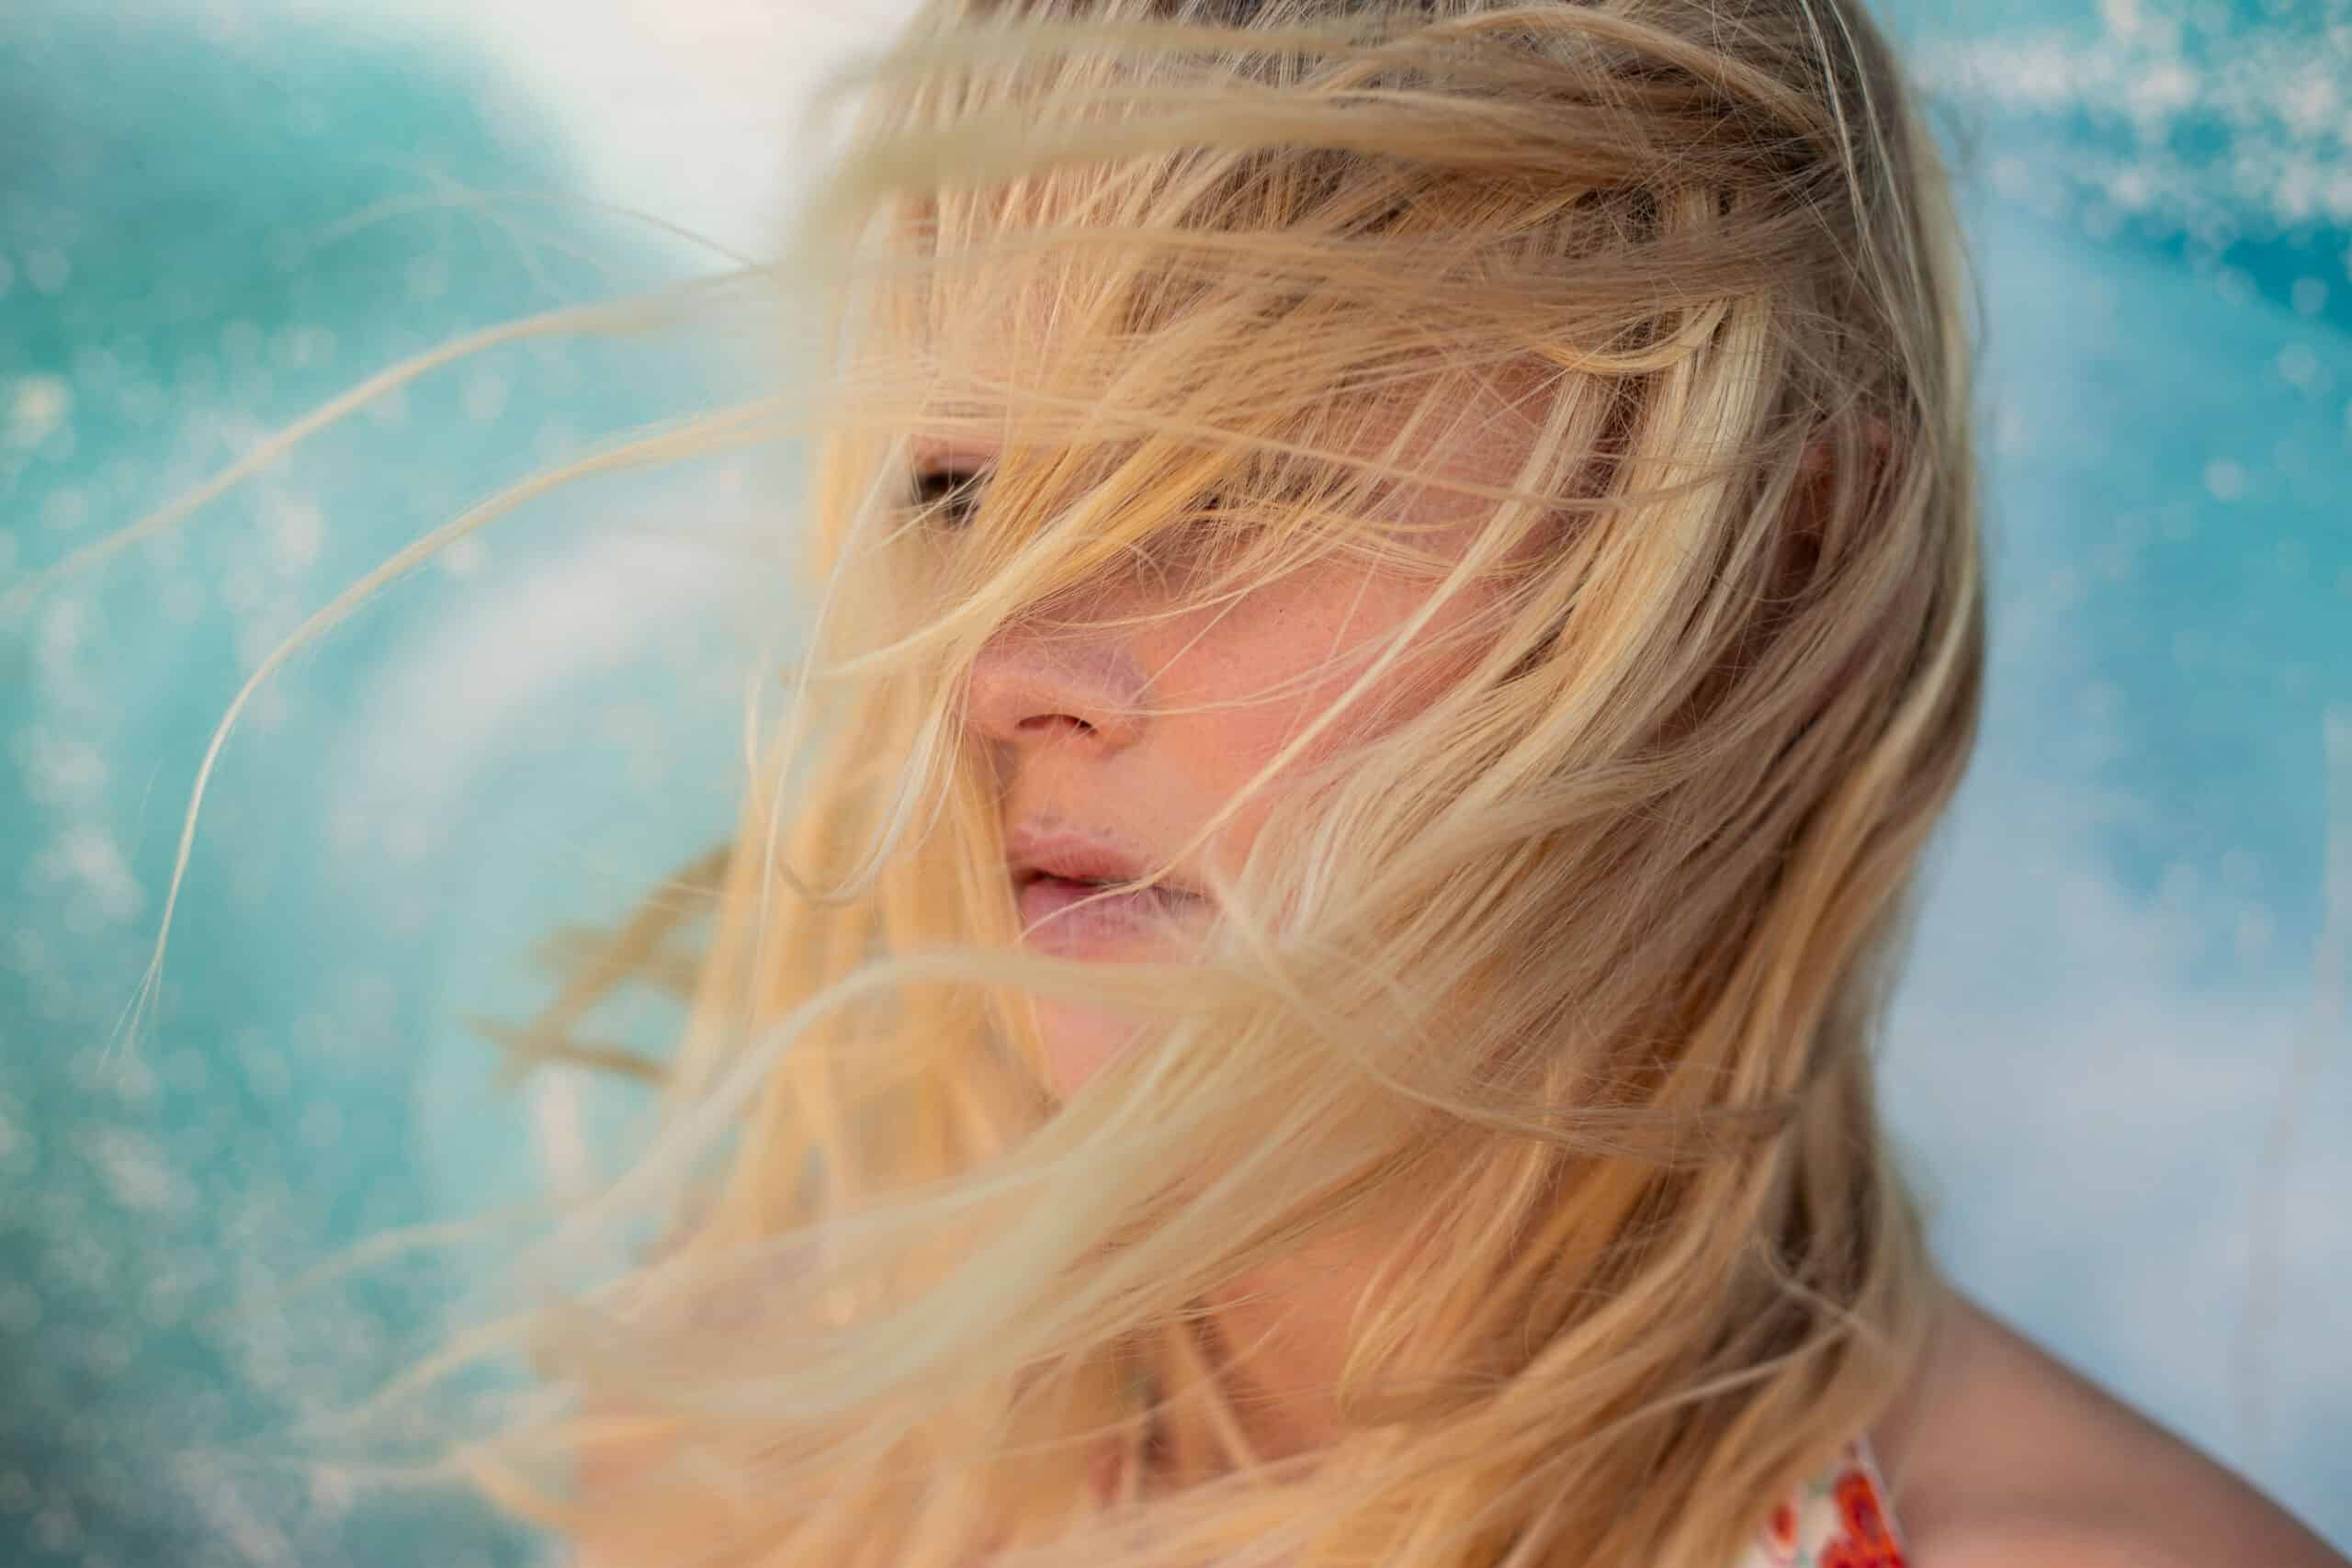 Ein Nahaufnahmeporträt einer Person mit langen blonden Haaren, die ihr ins Gesicht wehen, und die vor einem leicht verschwommenen aquamarinfarbenen Hintergrund steht. © Fotografie Tomas Rodriguez